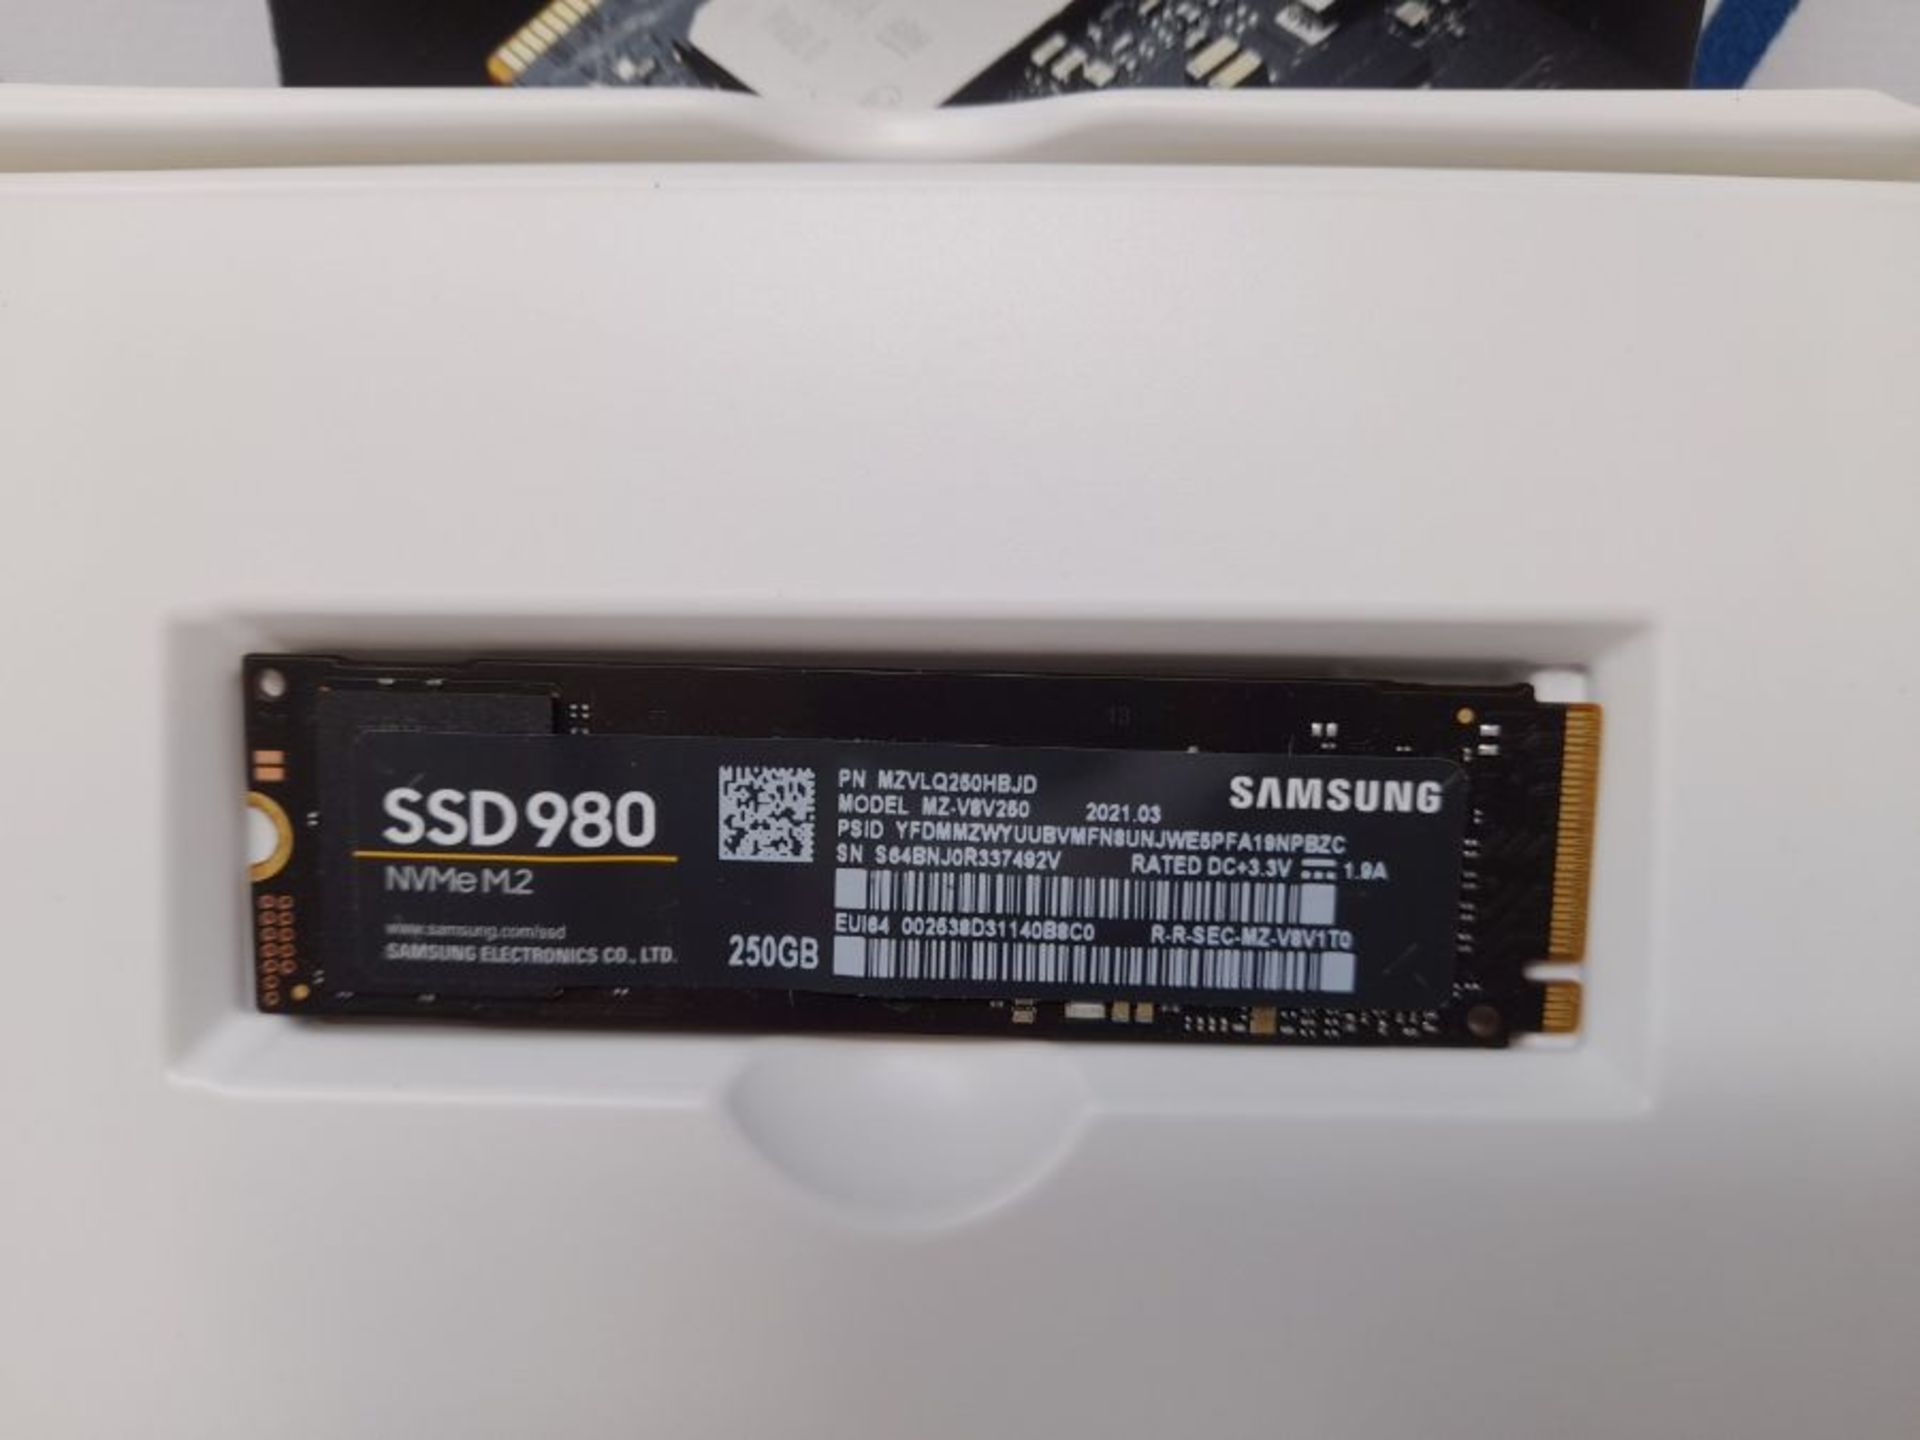 Samsung Memorie MZ-V8V250 980 SSD Interno da 250GB, PCIe NVMe M.2 - Image 3 of 3